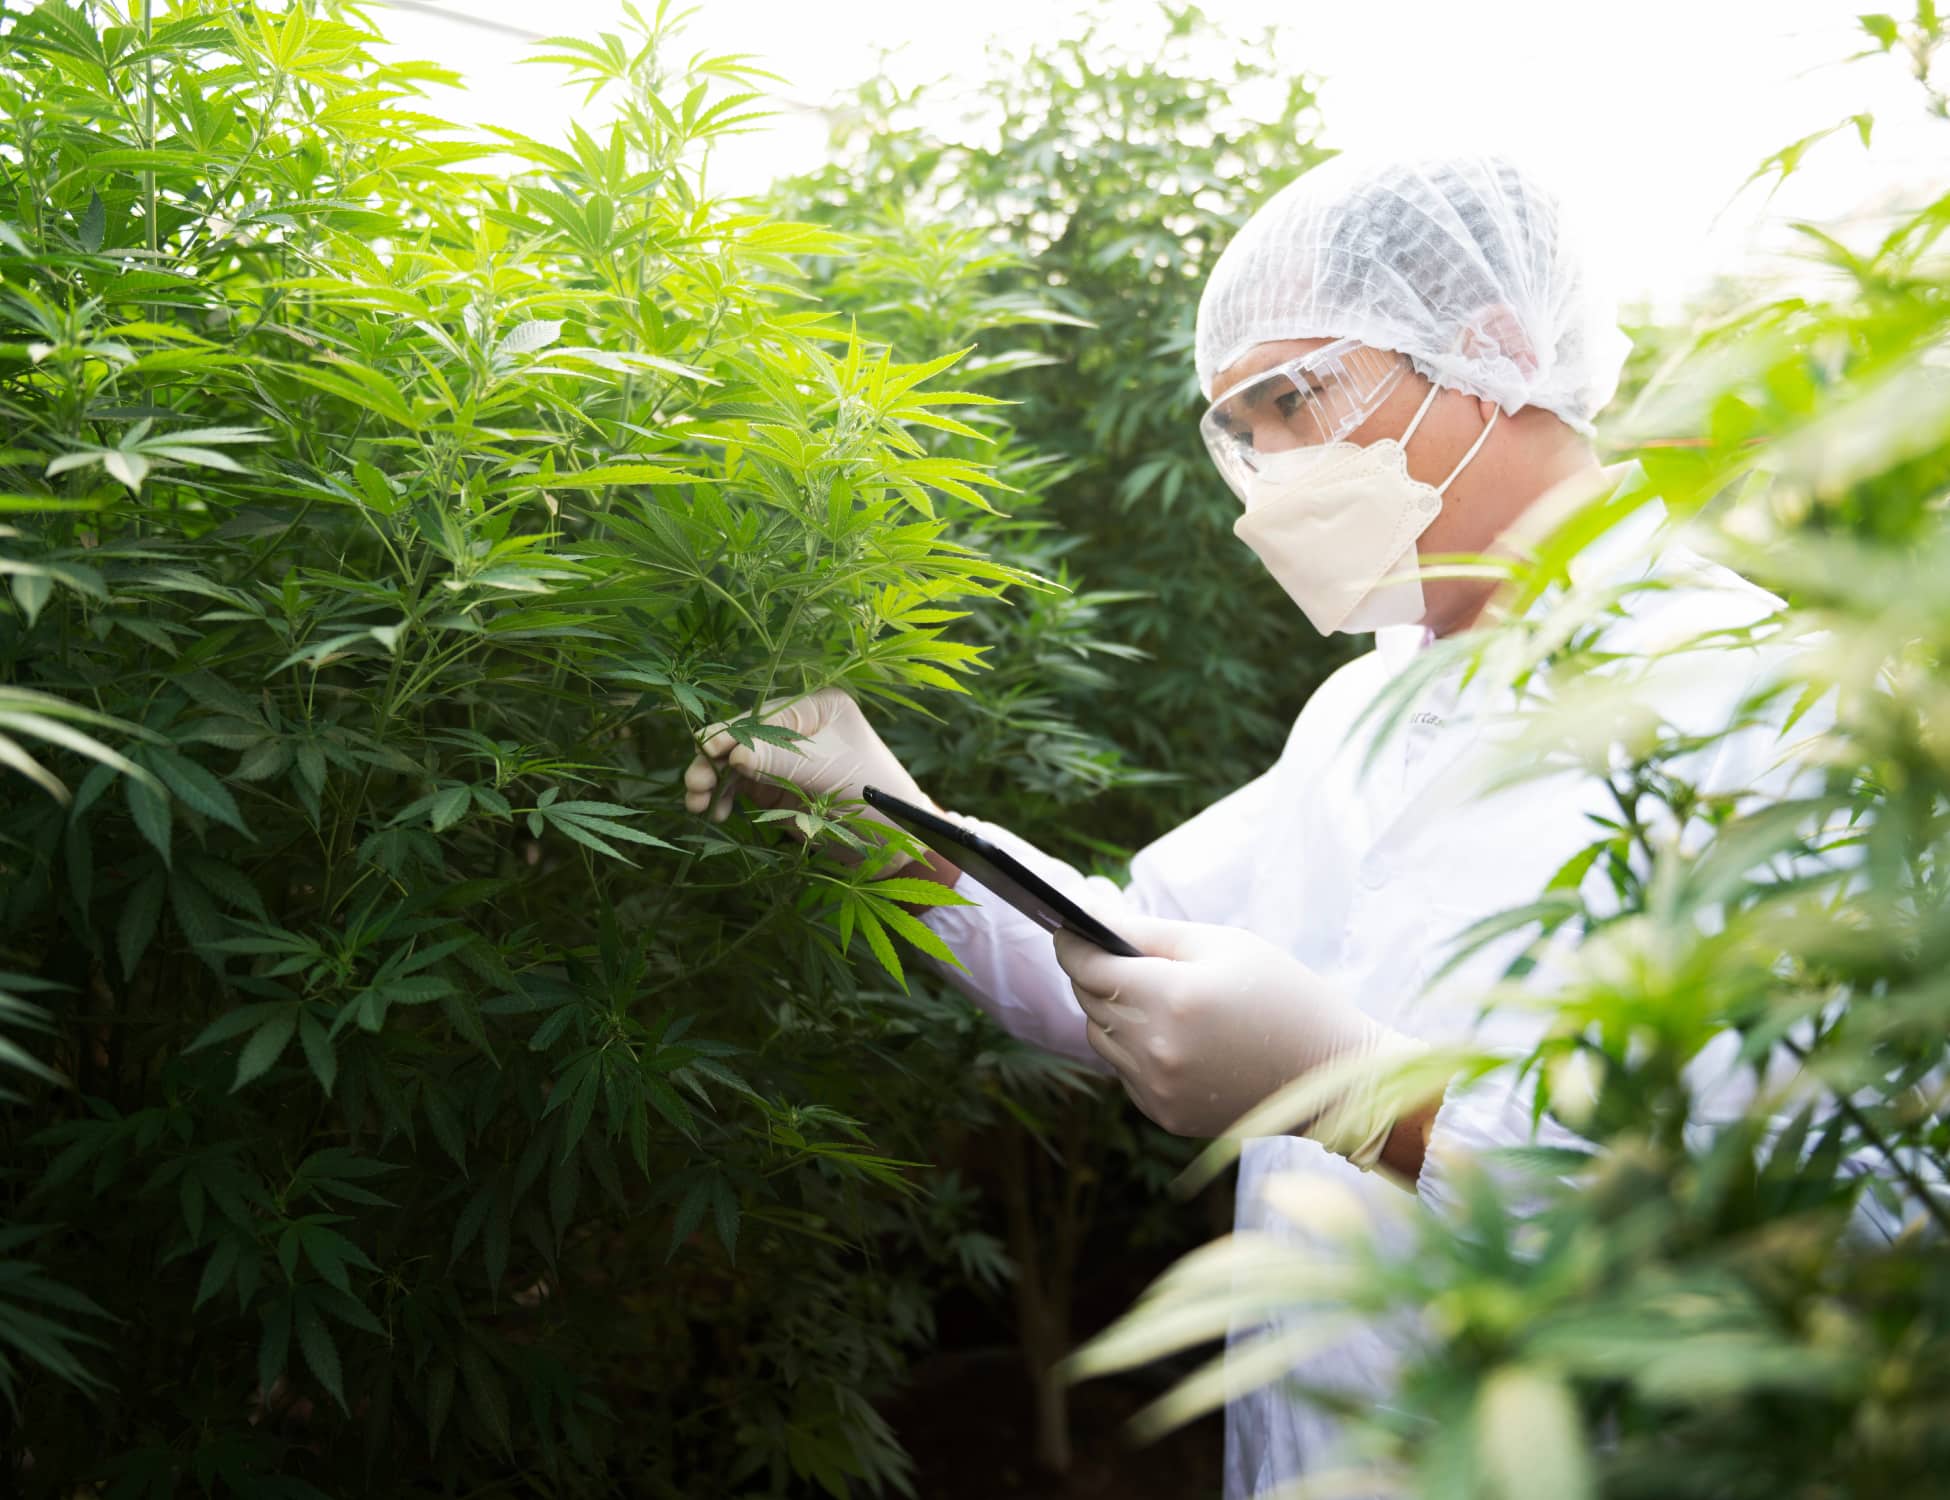 Esta es una fotografía de un cultivo de Cannabis relacionada con Soluciones para cultivos de cannabis